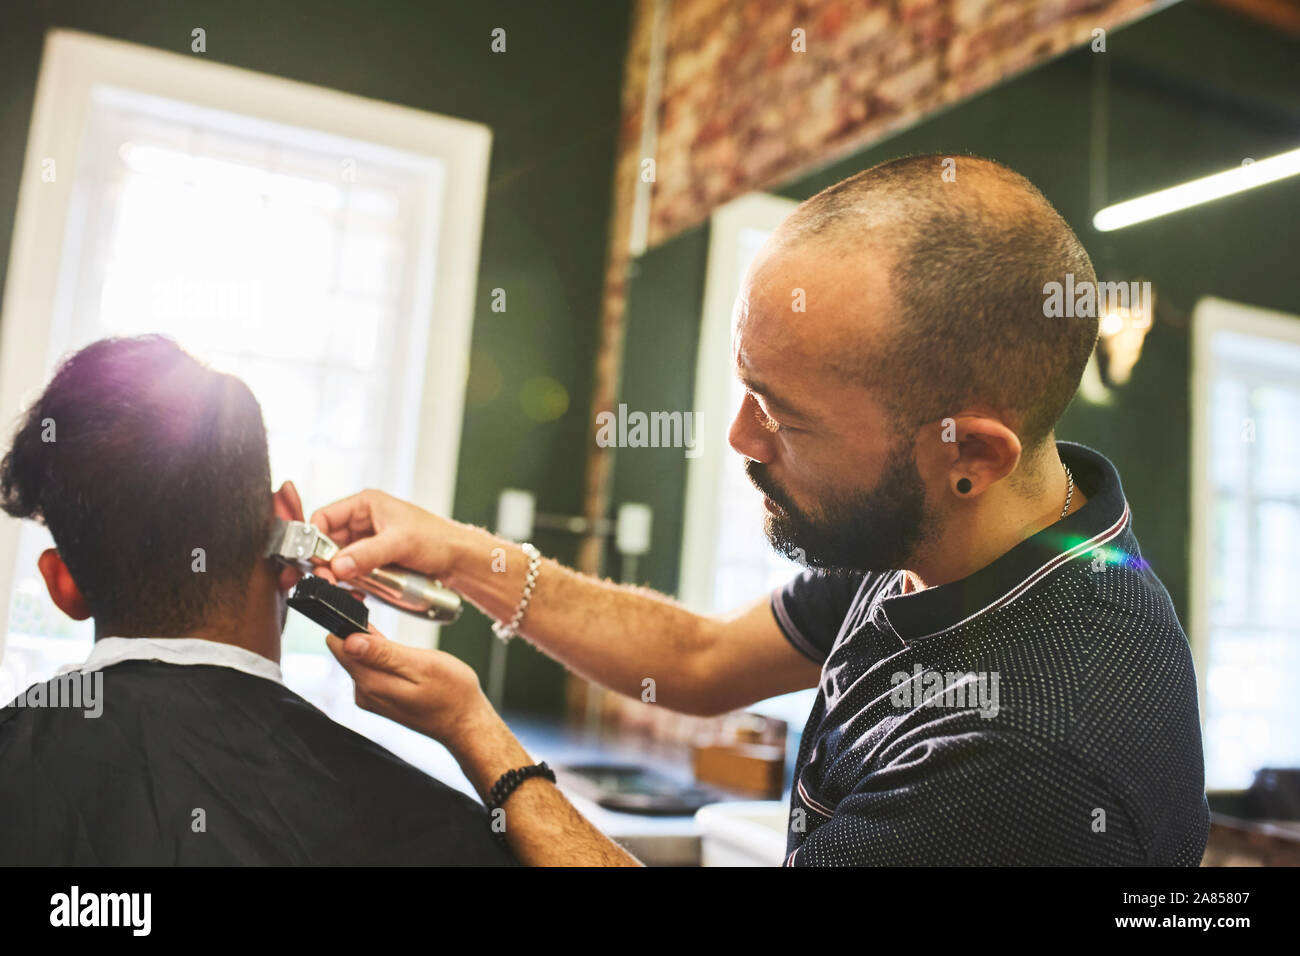 Männliche Friseur mit Trimmern geben Kunden Haarschnitt im barbershop Stockfoto